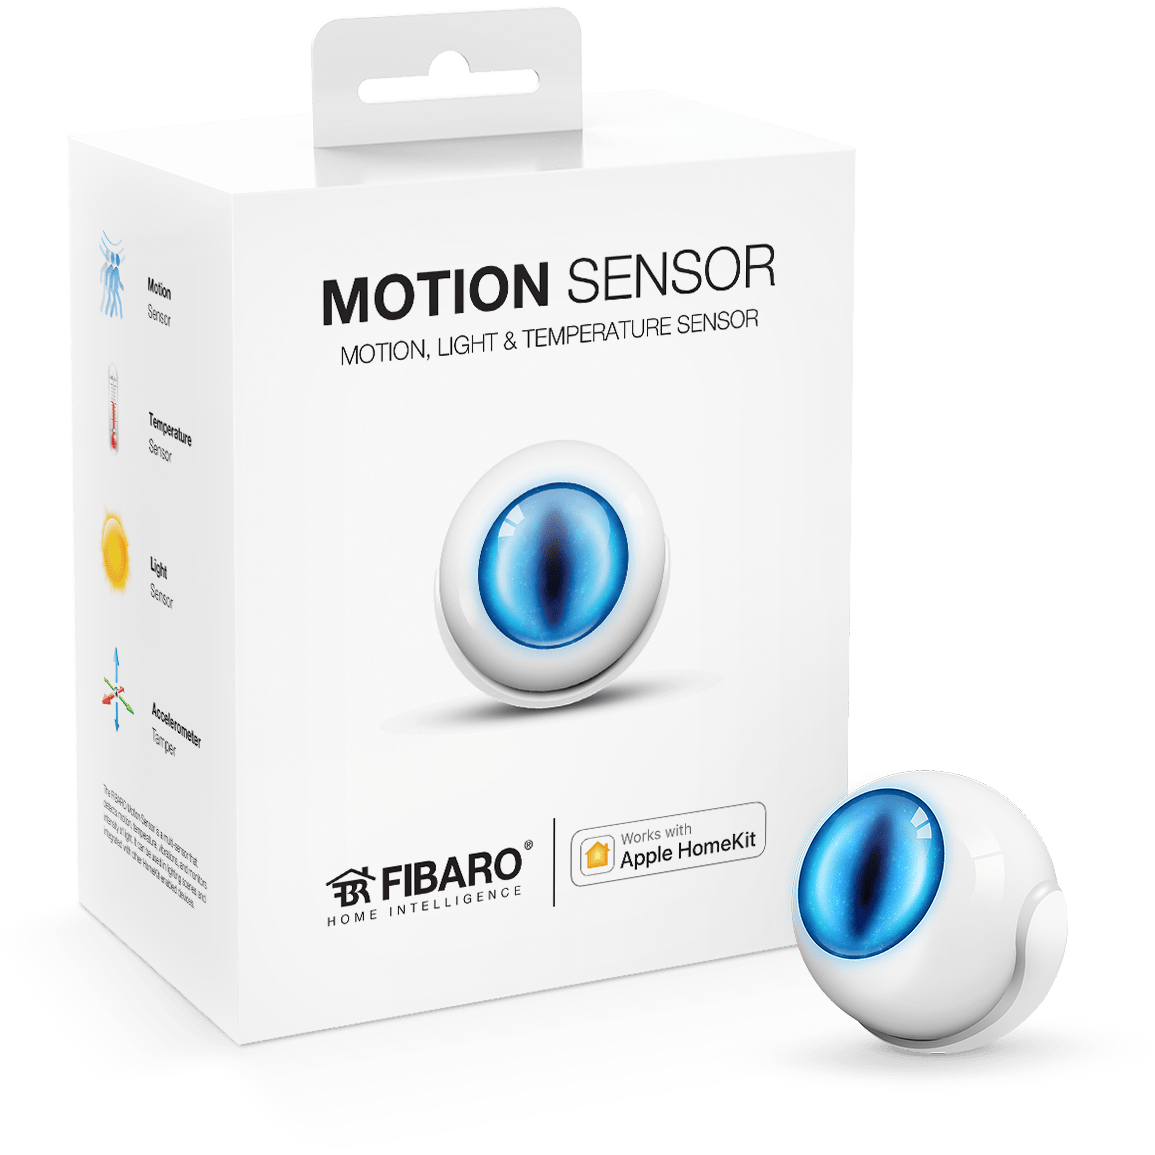 Motion Sensor Boxed